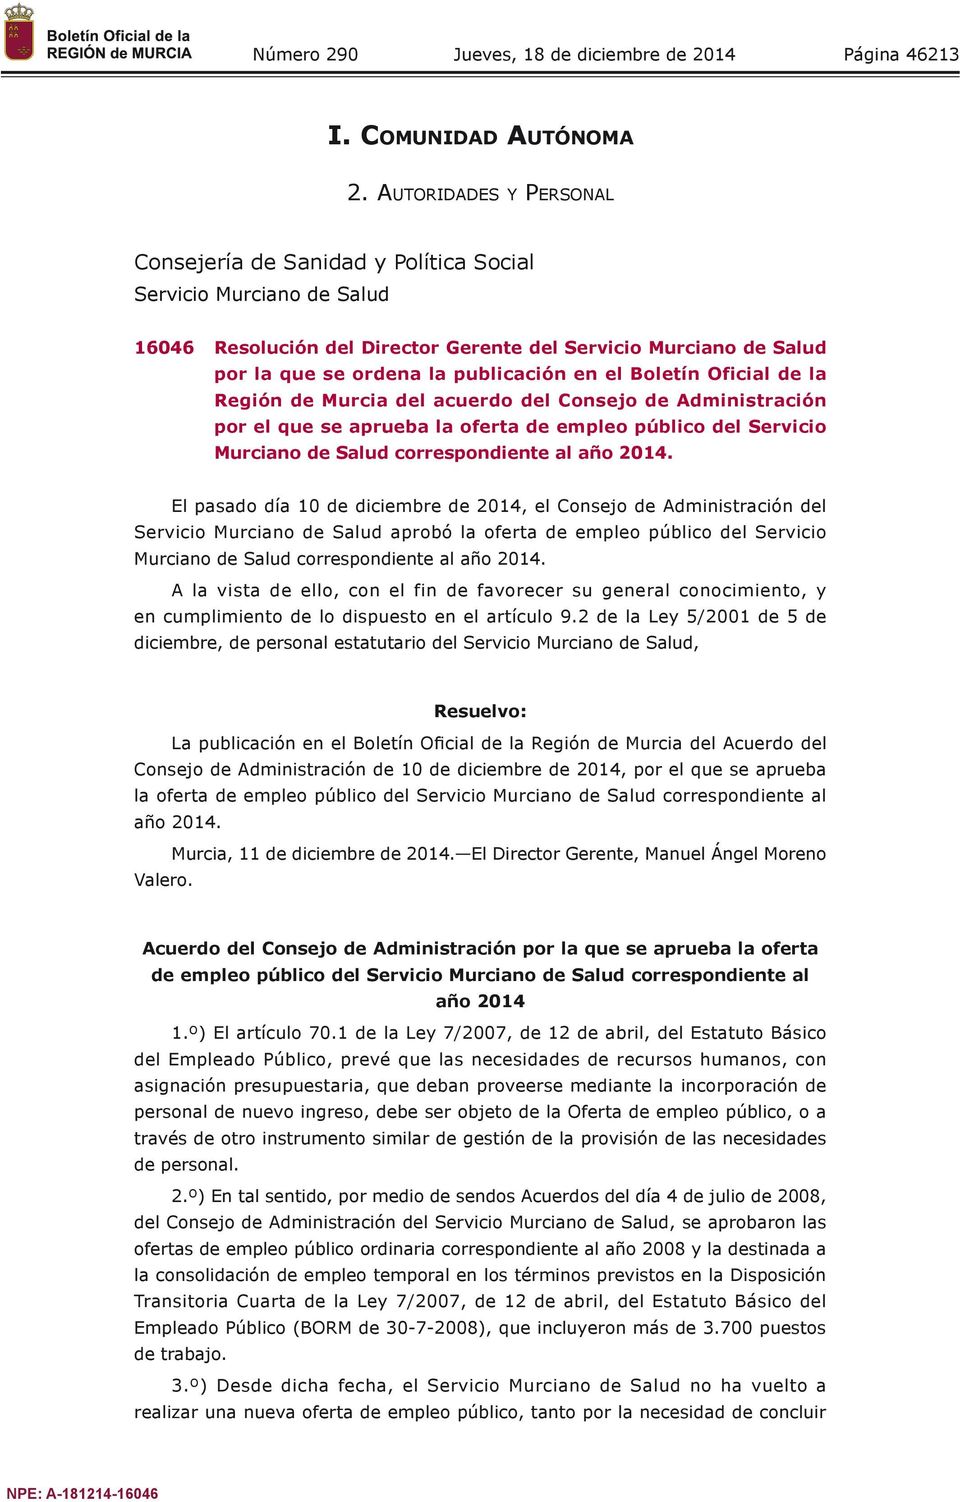 el Boletín Oficial de la Región de Murcia del acuerdo del Consejo de Administración por el que se aprueba la oferta de empleo público del Servicio Murciano de Salud correspondiente al año 2014.